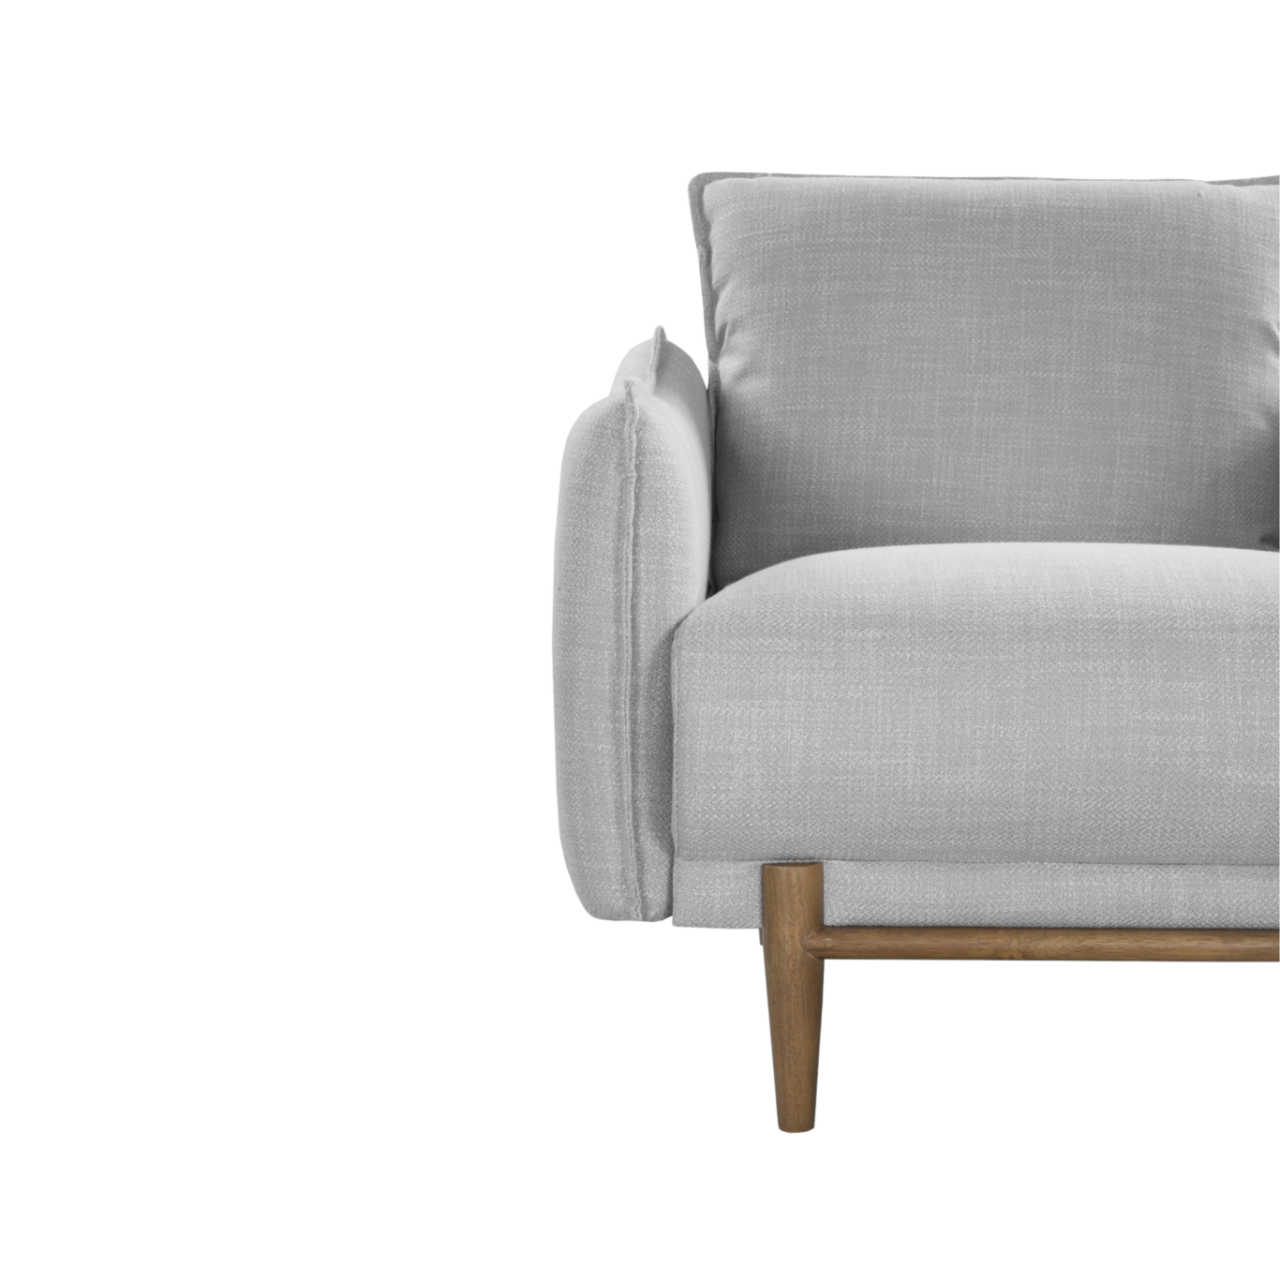 detail of modern designer armchair in grey linen upholstery